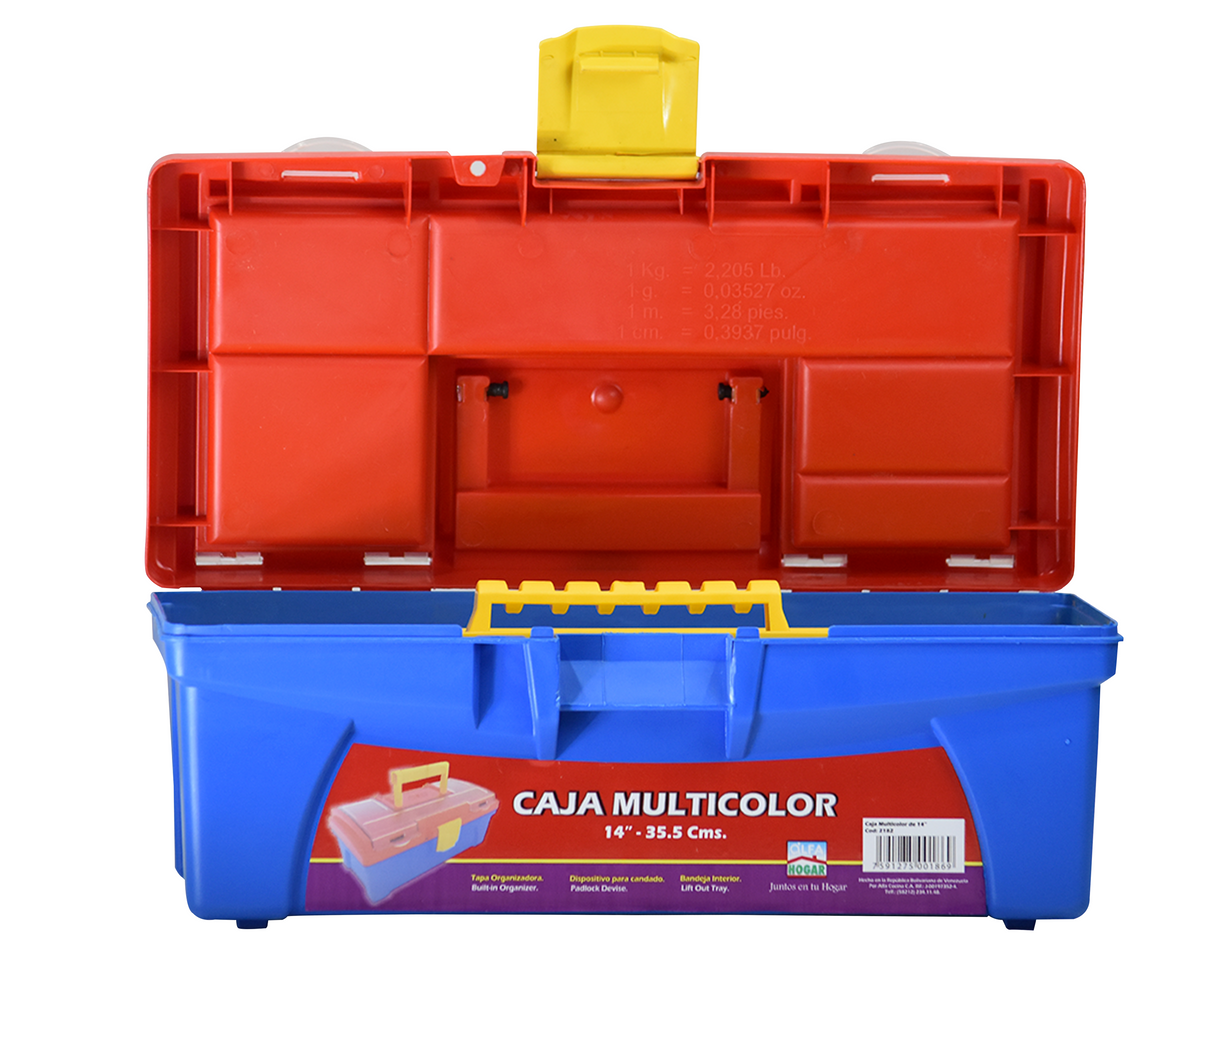 Caja de herramienta 14" multicolor Alfa Hogar